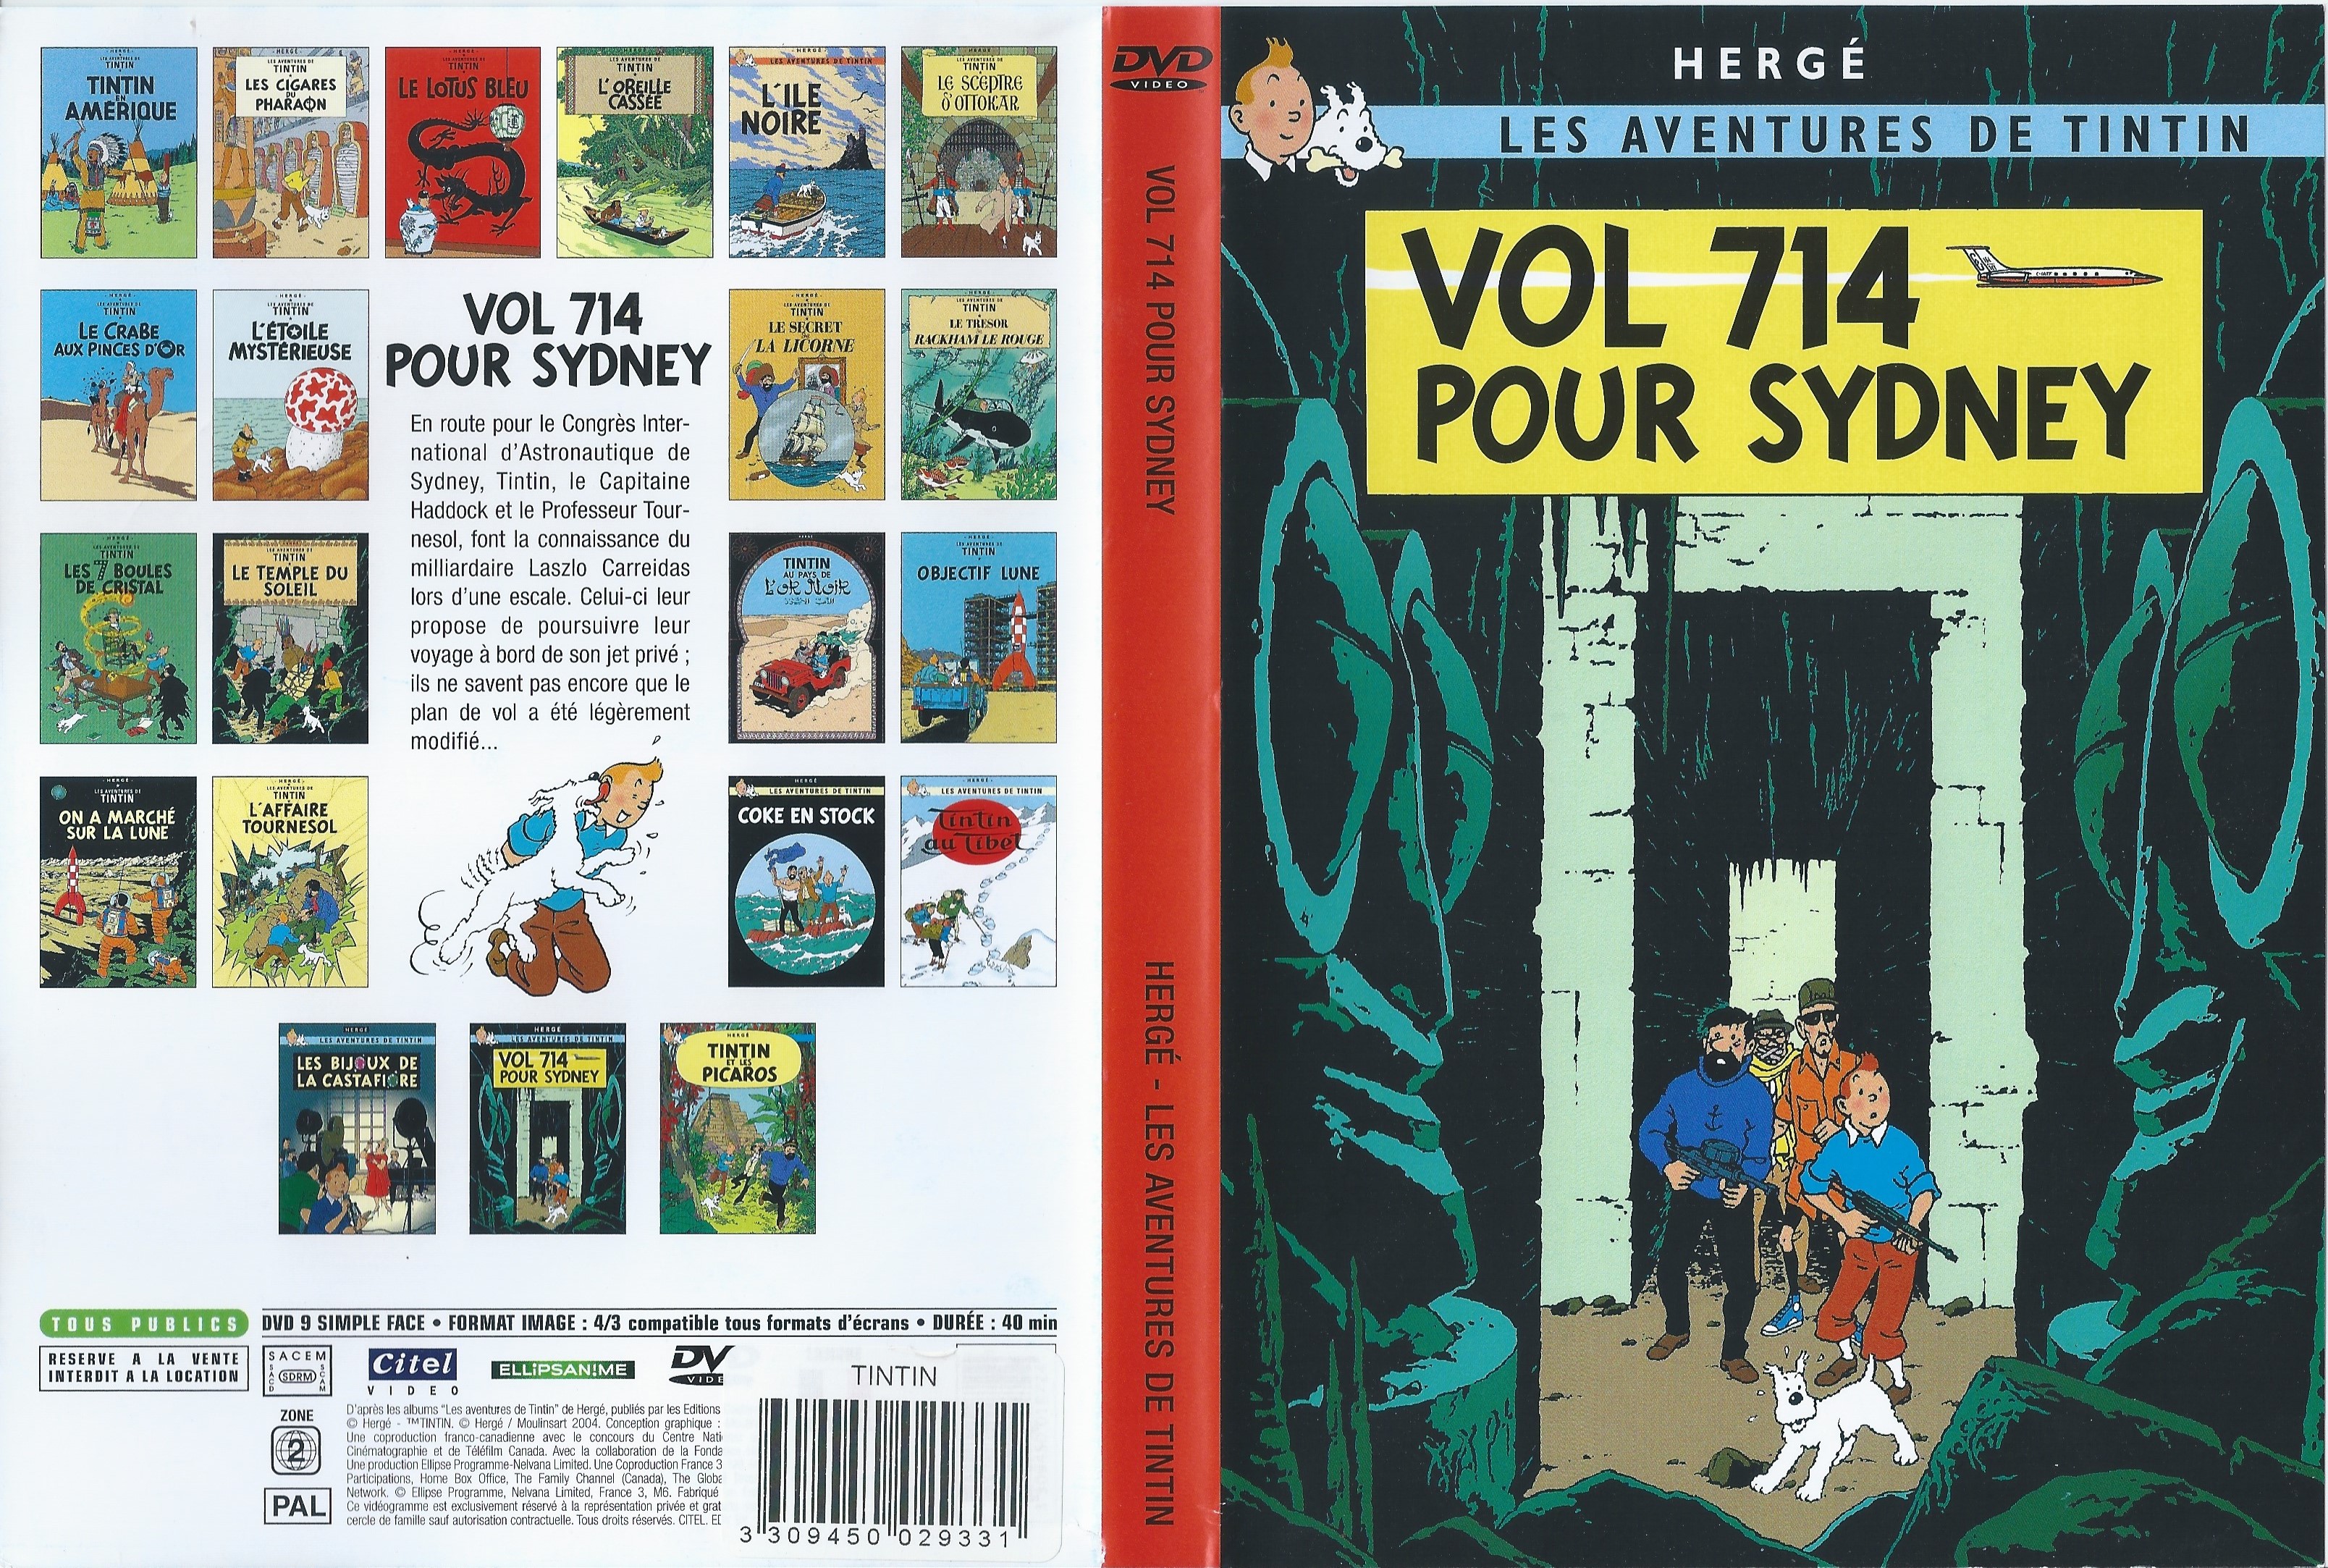 Jaquette DVD Tintin - Vol 714 pour sydney